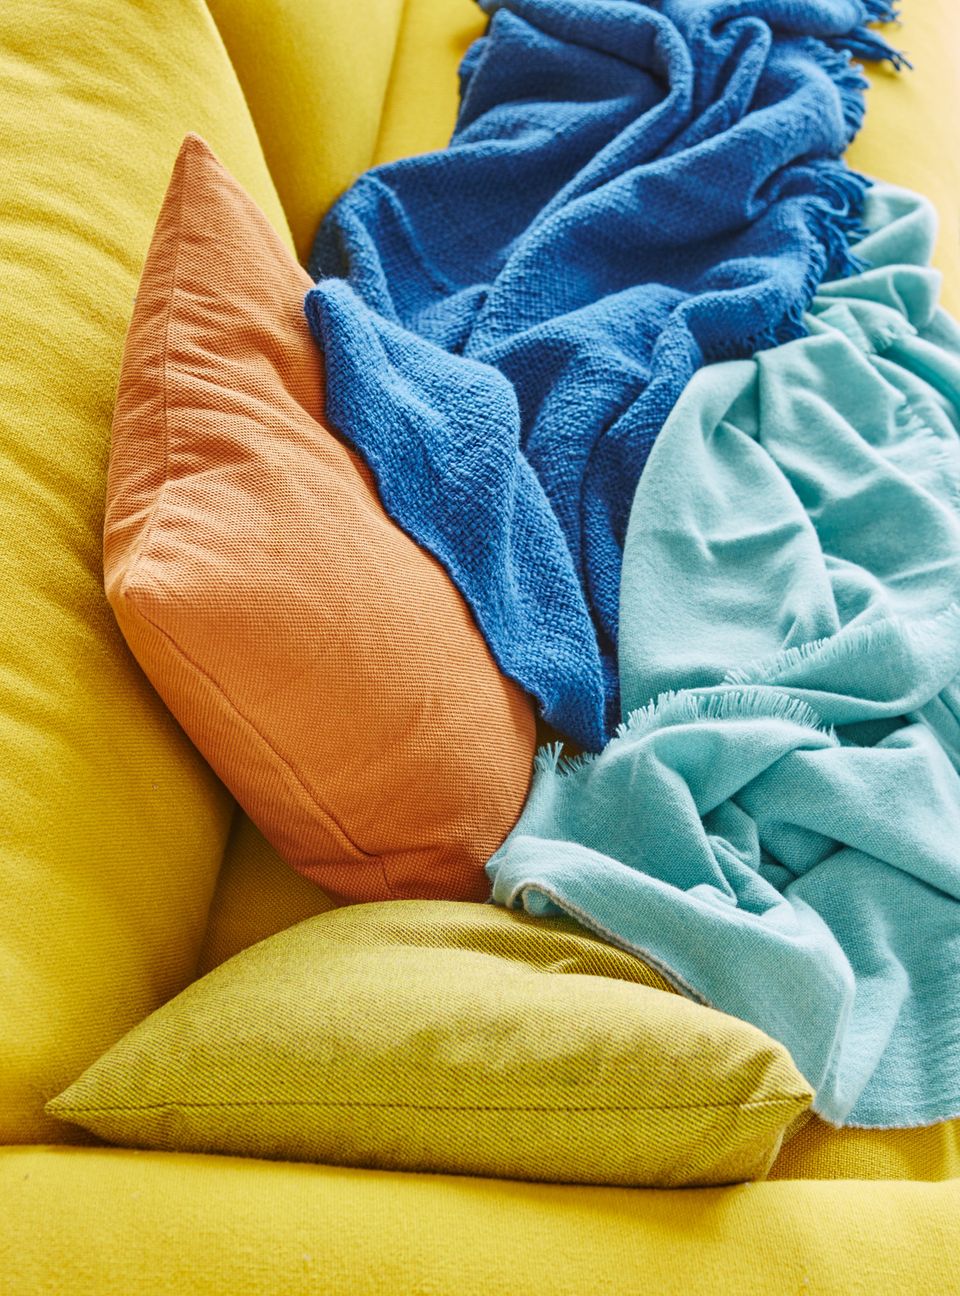 Kissen in Gelb und Orange sowie Decken in Balu und Türkis